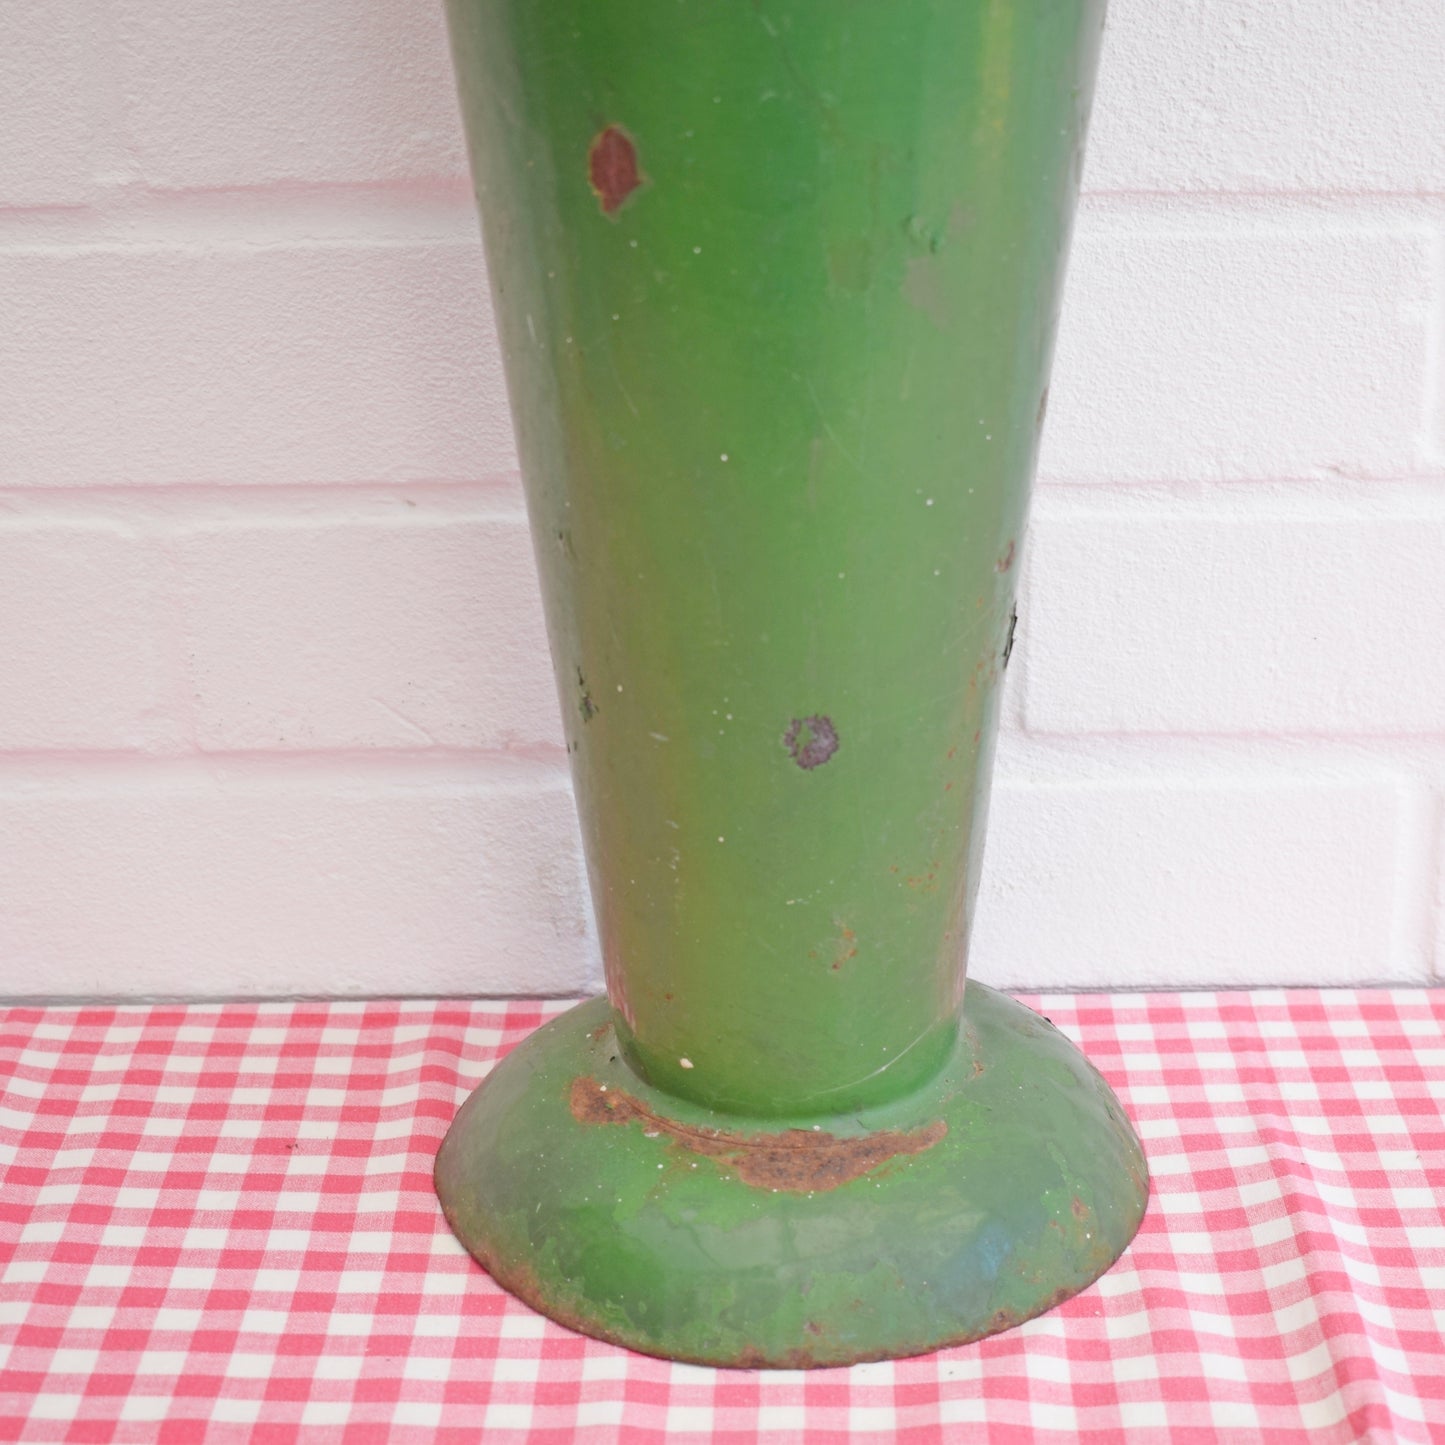 Vintage 1950s Large Metal Flower Shop Vase - Green